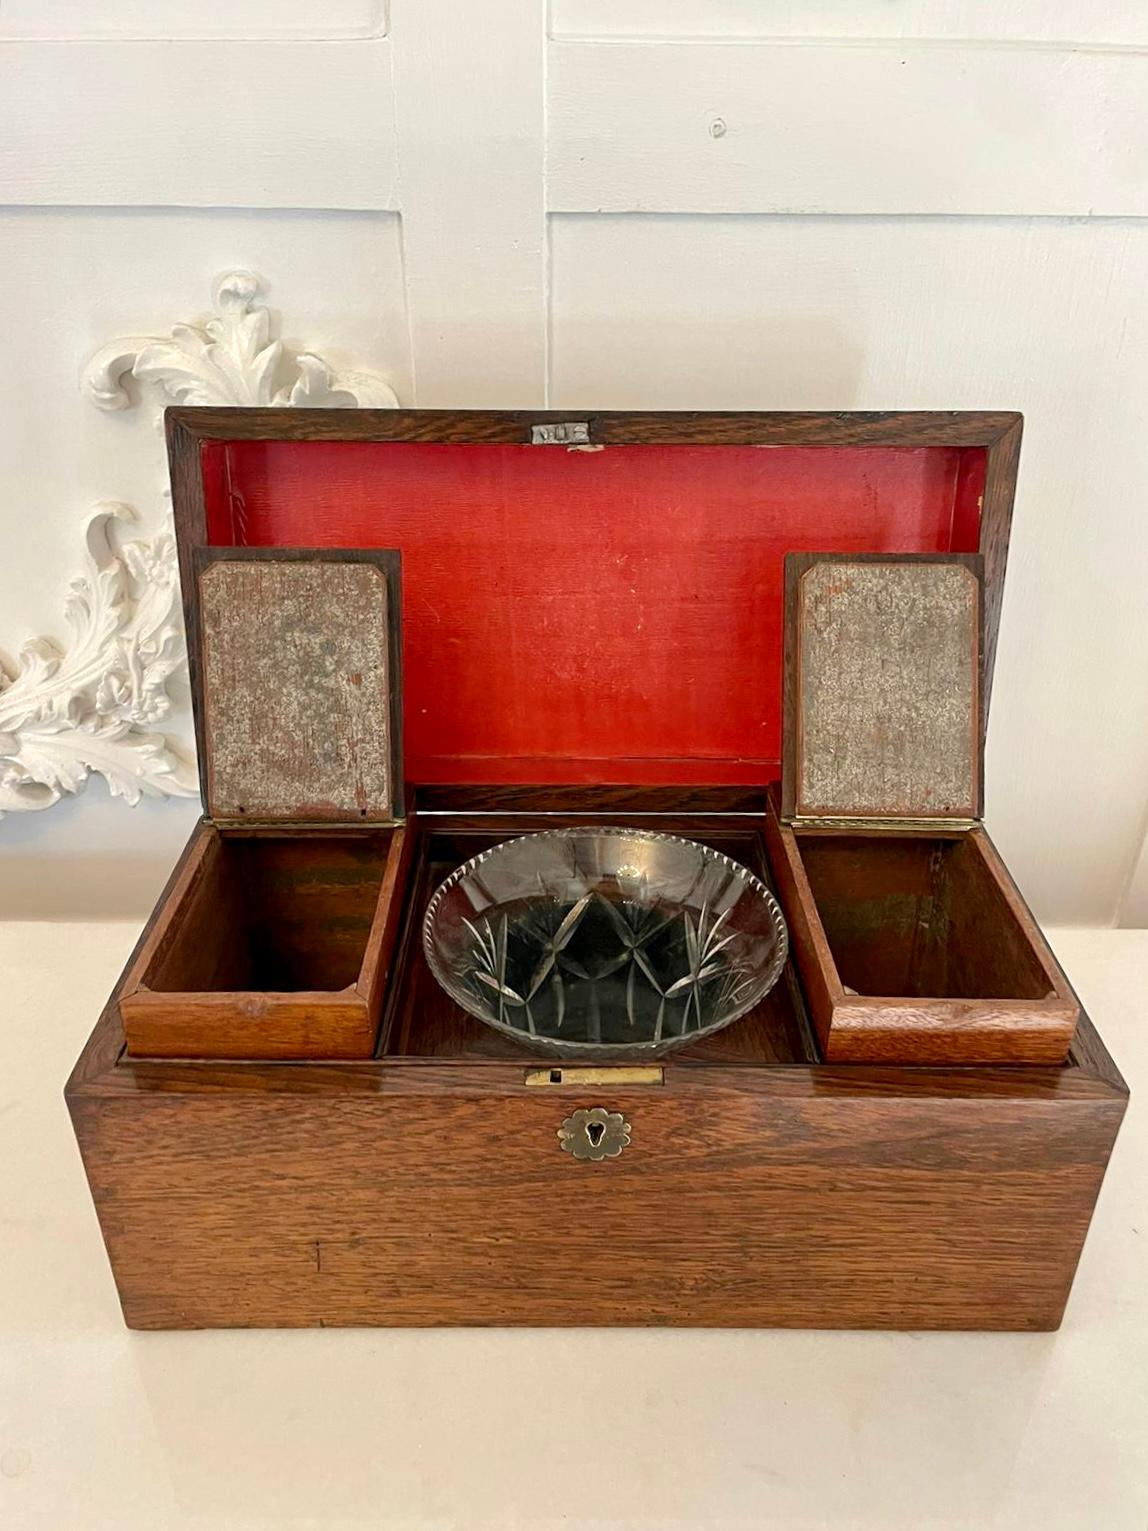 Antike Teedose aus Palisanderholz in viktorianischer Qualität, die sich nach oben öffnen lässt, um ein ausgestattetes Inneres mit zwei Teedosen mit Deckel und einer Glasmischschüssel zu enthüllen 

H 15 x B 31,5 x T 15,5 cm
Datum 1860
